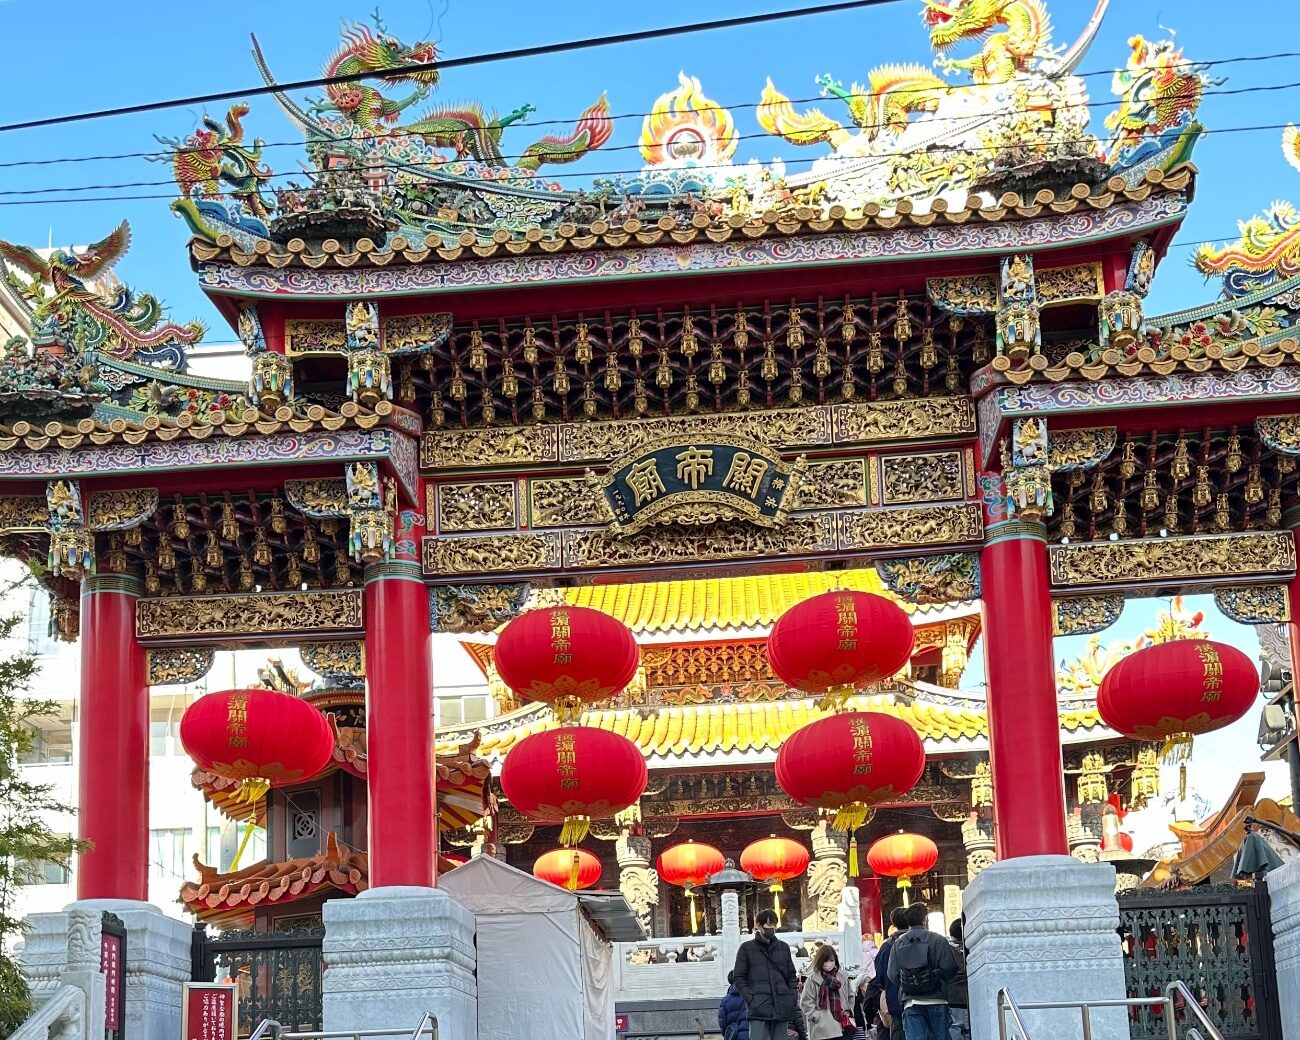 横浜中華街の中心に位置する横浜関帝廟の正面が一望できる。晴天の空に雲ひとつない日に、サザン・ワークのイベントとして初詣に訪れた写真